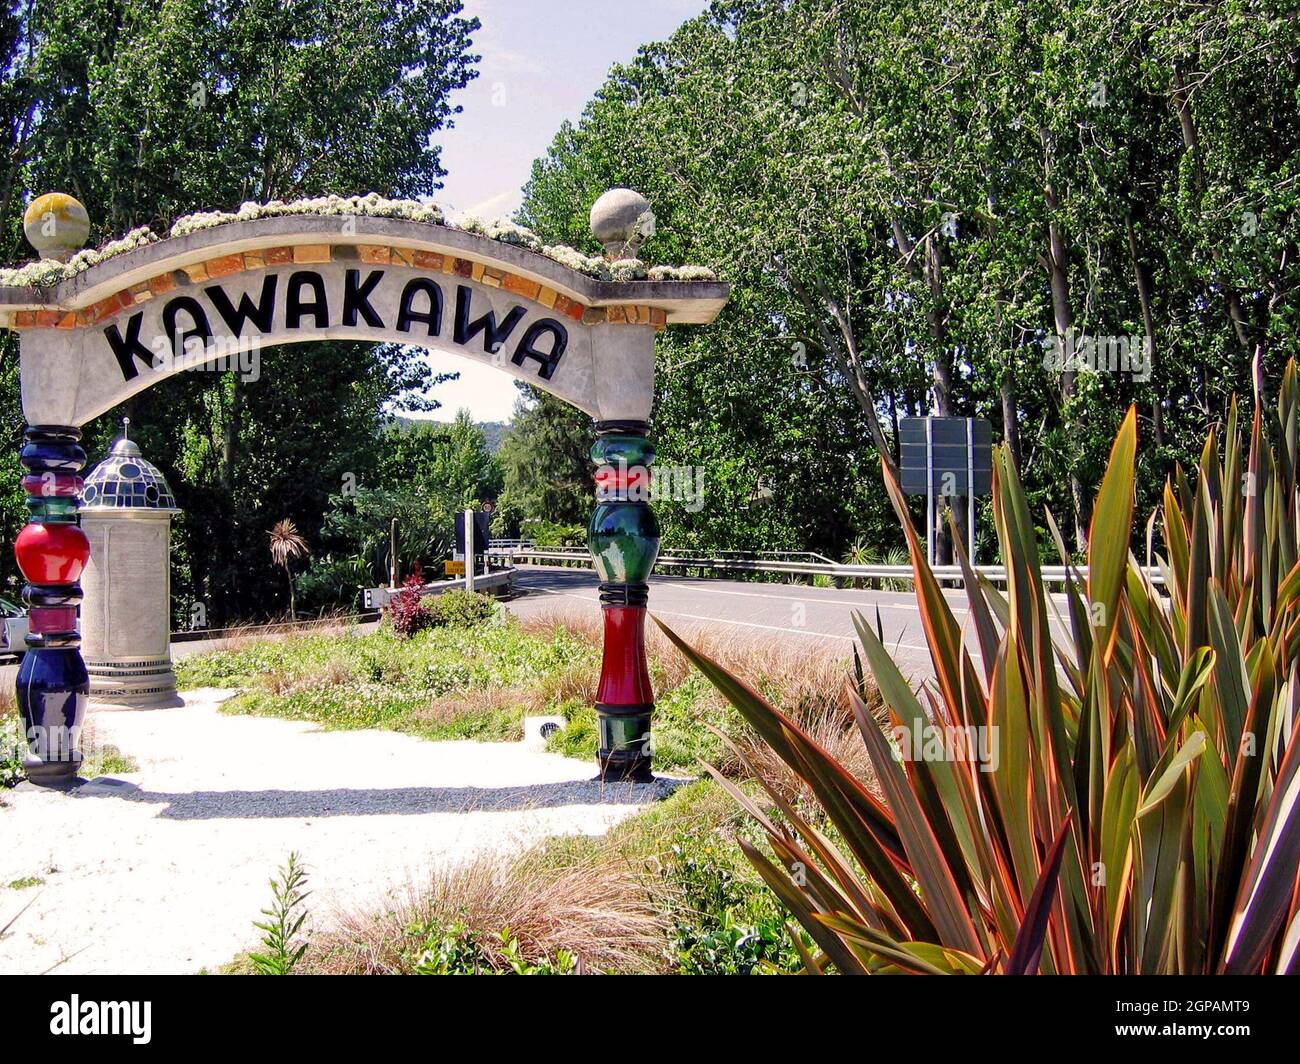 Kawakawa, en la Bahía de las Islas, en la Isla Norte de Nueva Zelanda, lleva el nombre del arbusto indígena y la planta medicinal. La ciudad se ha hecho conocida por los baños públicos de Kawakawa que en 1998 fueron transformados por Friedensreich Hundertwasser, junto con la ayuda de la comunidad, en un destino para sí mismo. El artista austriaco, y residente de Nueva Zelanda, vivió aquí desde 1975 hasta su muerte en 2000. En 200 regaló los inodoros a la ciudad. El edificio independiente con arcos y aseo está diseñado en el estilo característico de los artistas. Foto de stock